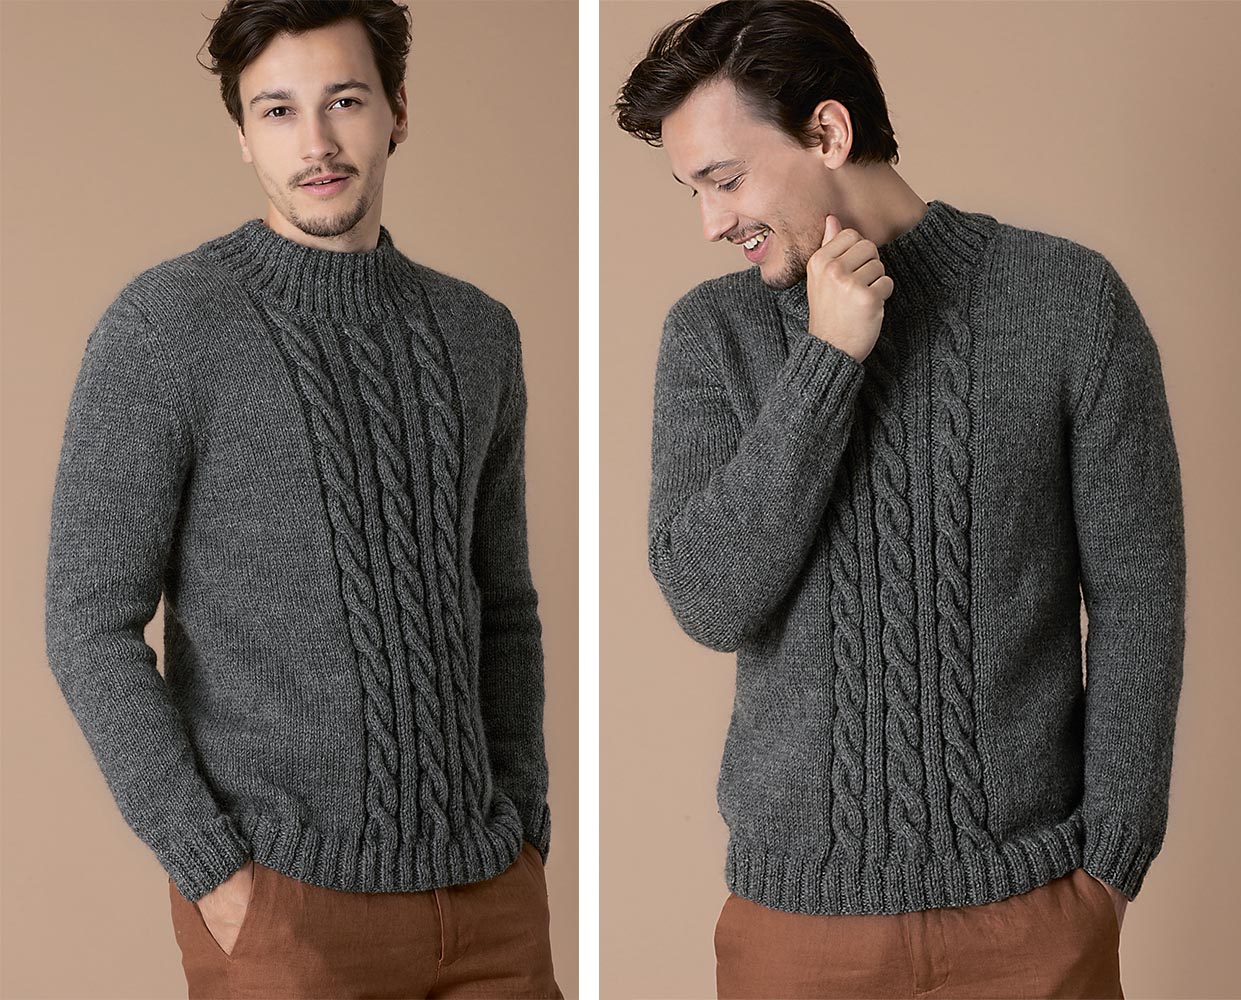 Пуловер, связанный поперек